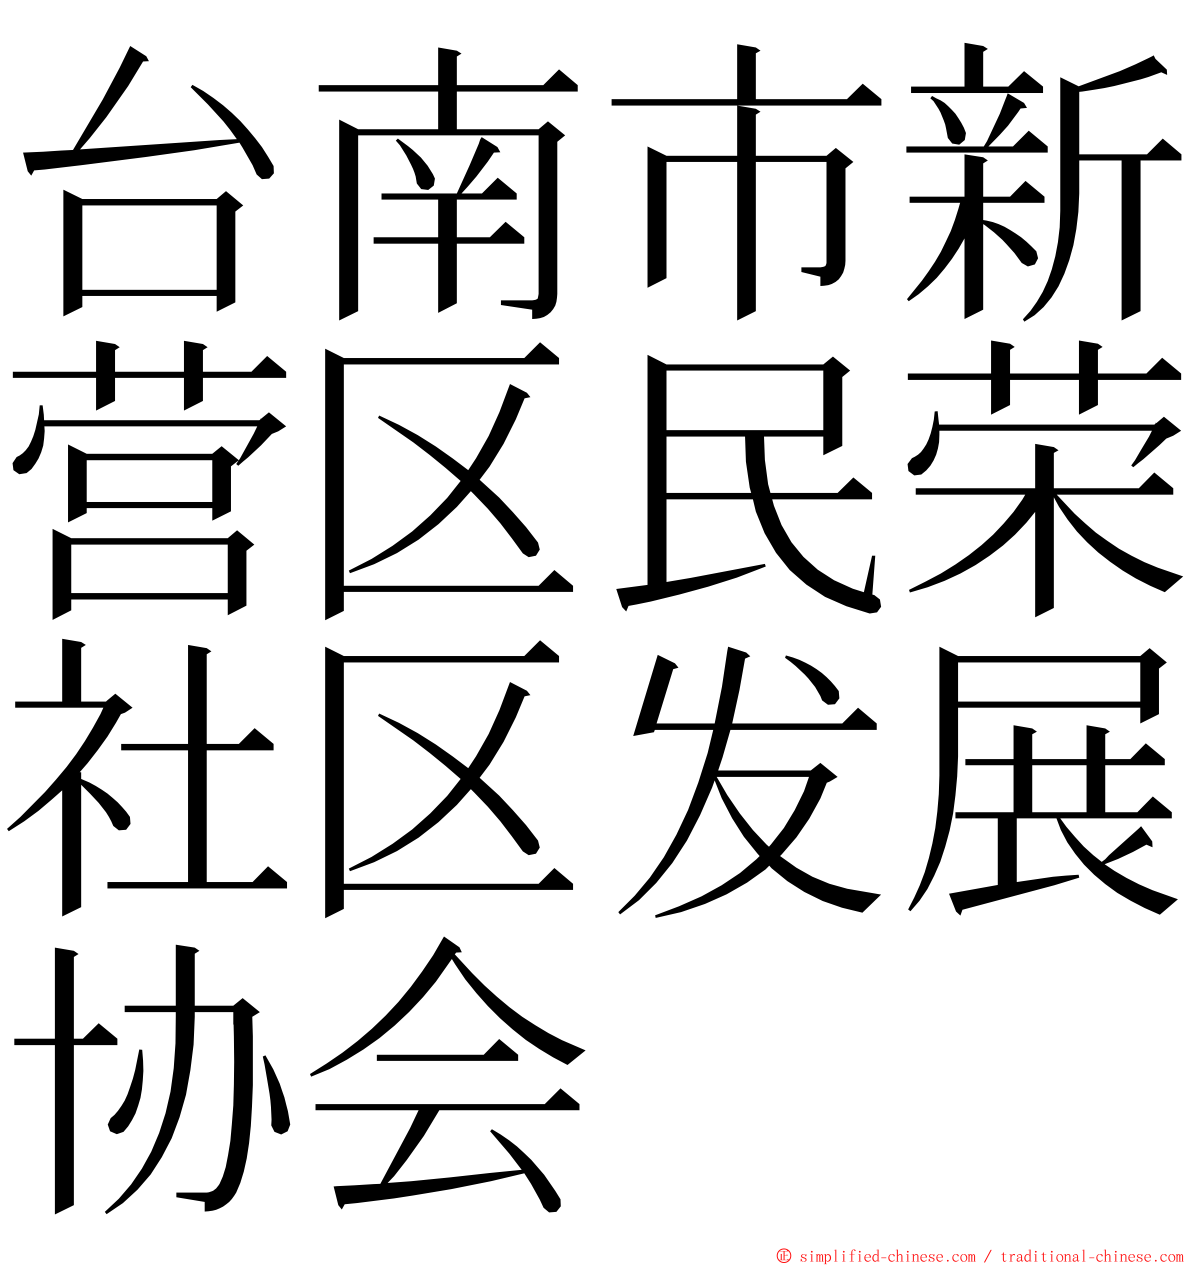 台南市新营区民荣社区发展协会 ming font